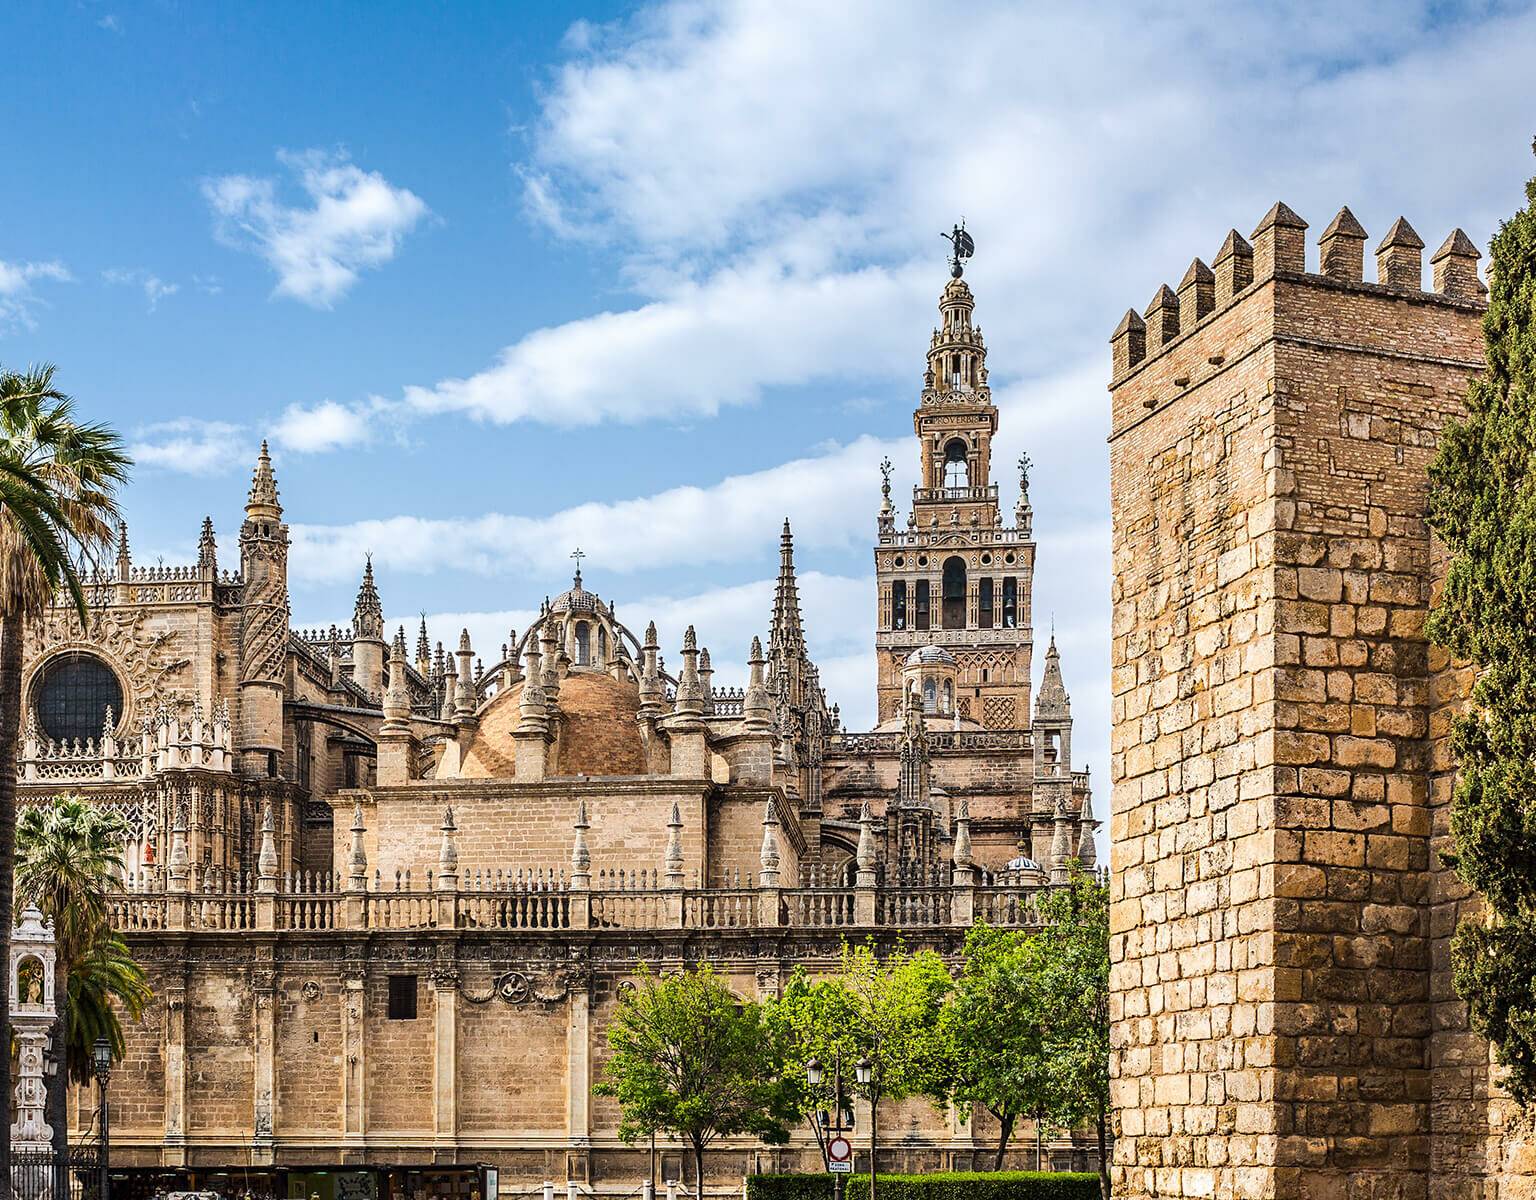 In Sevilla steht mit seinen üppigen Verzierungen und Türmchen die Kathedrale Santa María de la Sede, sie ist die größte gotische Kirche Spaniens.